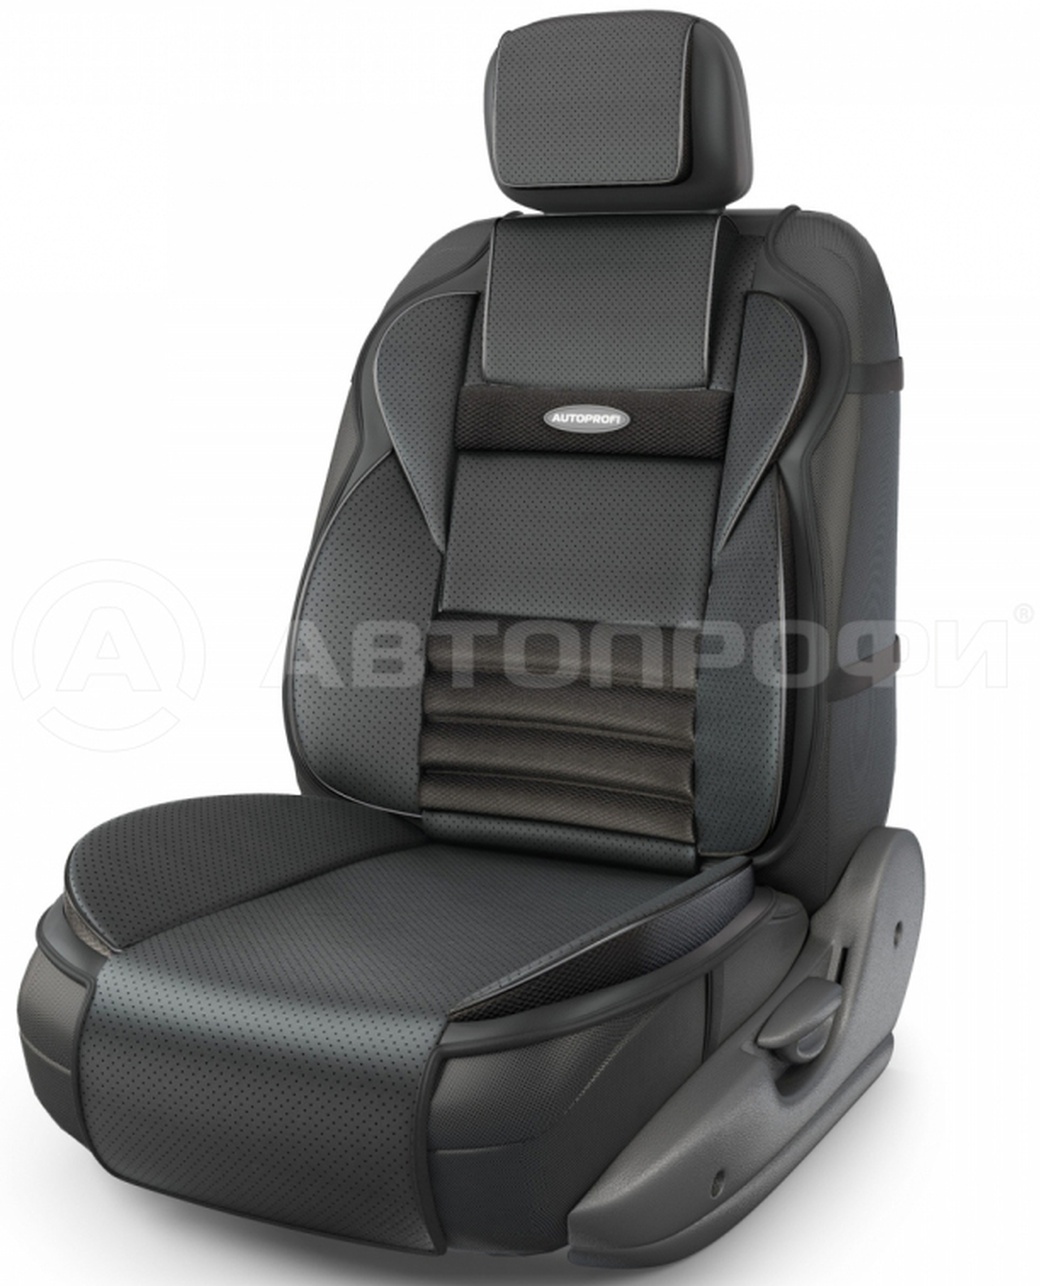 Ортопедическая накидка AUTOPRIFI на сиденье Multi Comfort, MLT-320G BK, анатомическая, 6 упоров, 3 предмета, материал экокожа, чёрный фото